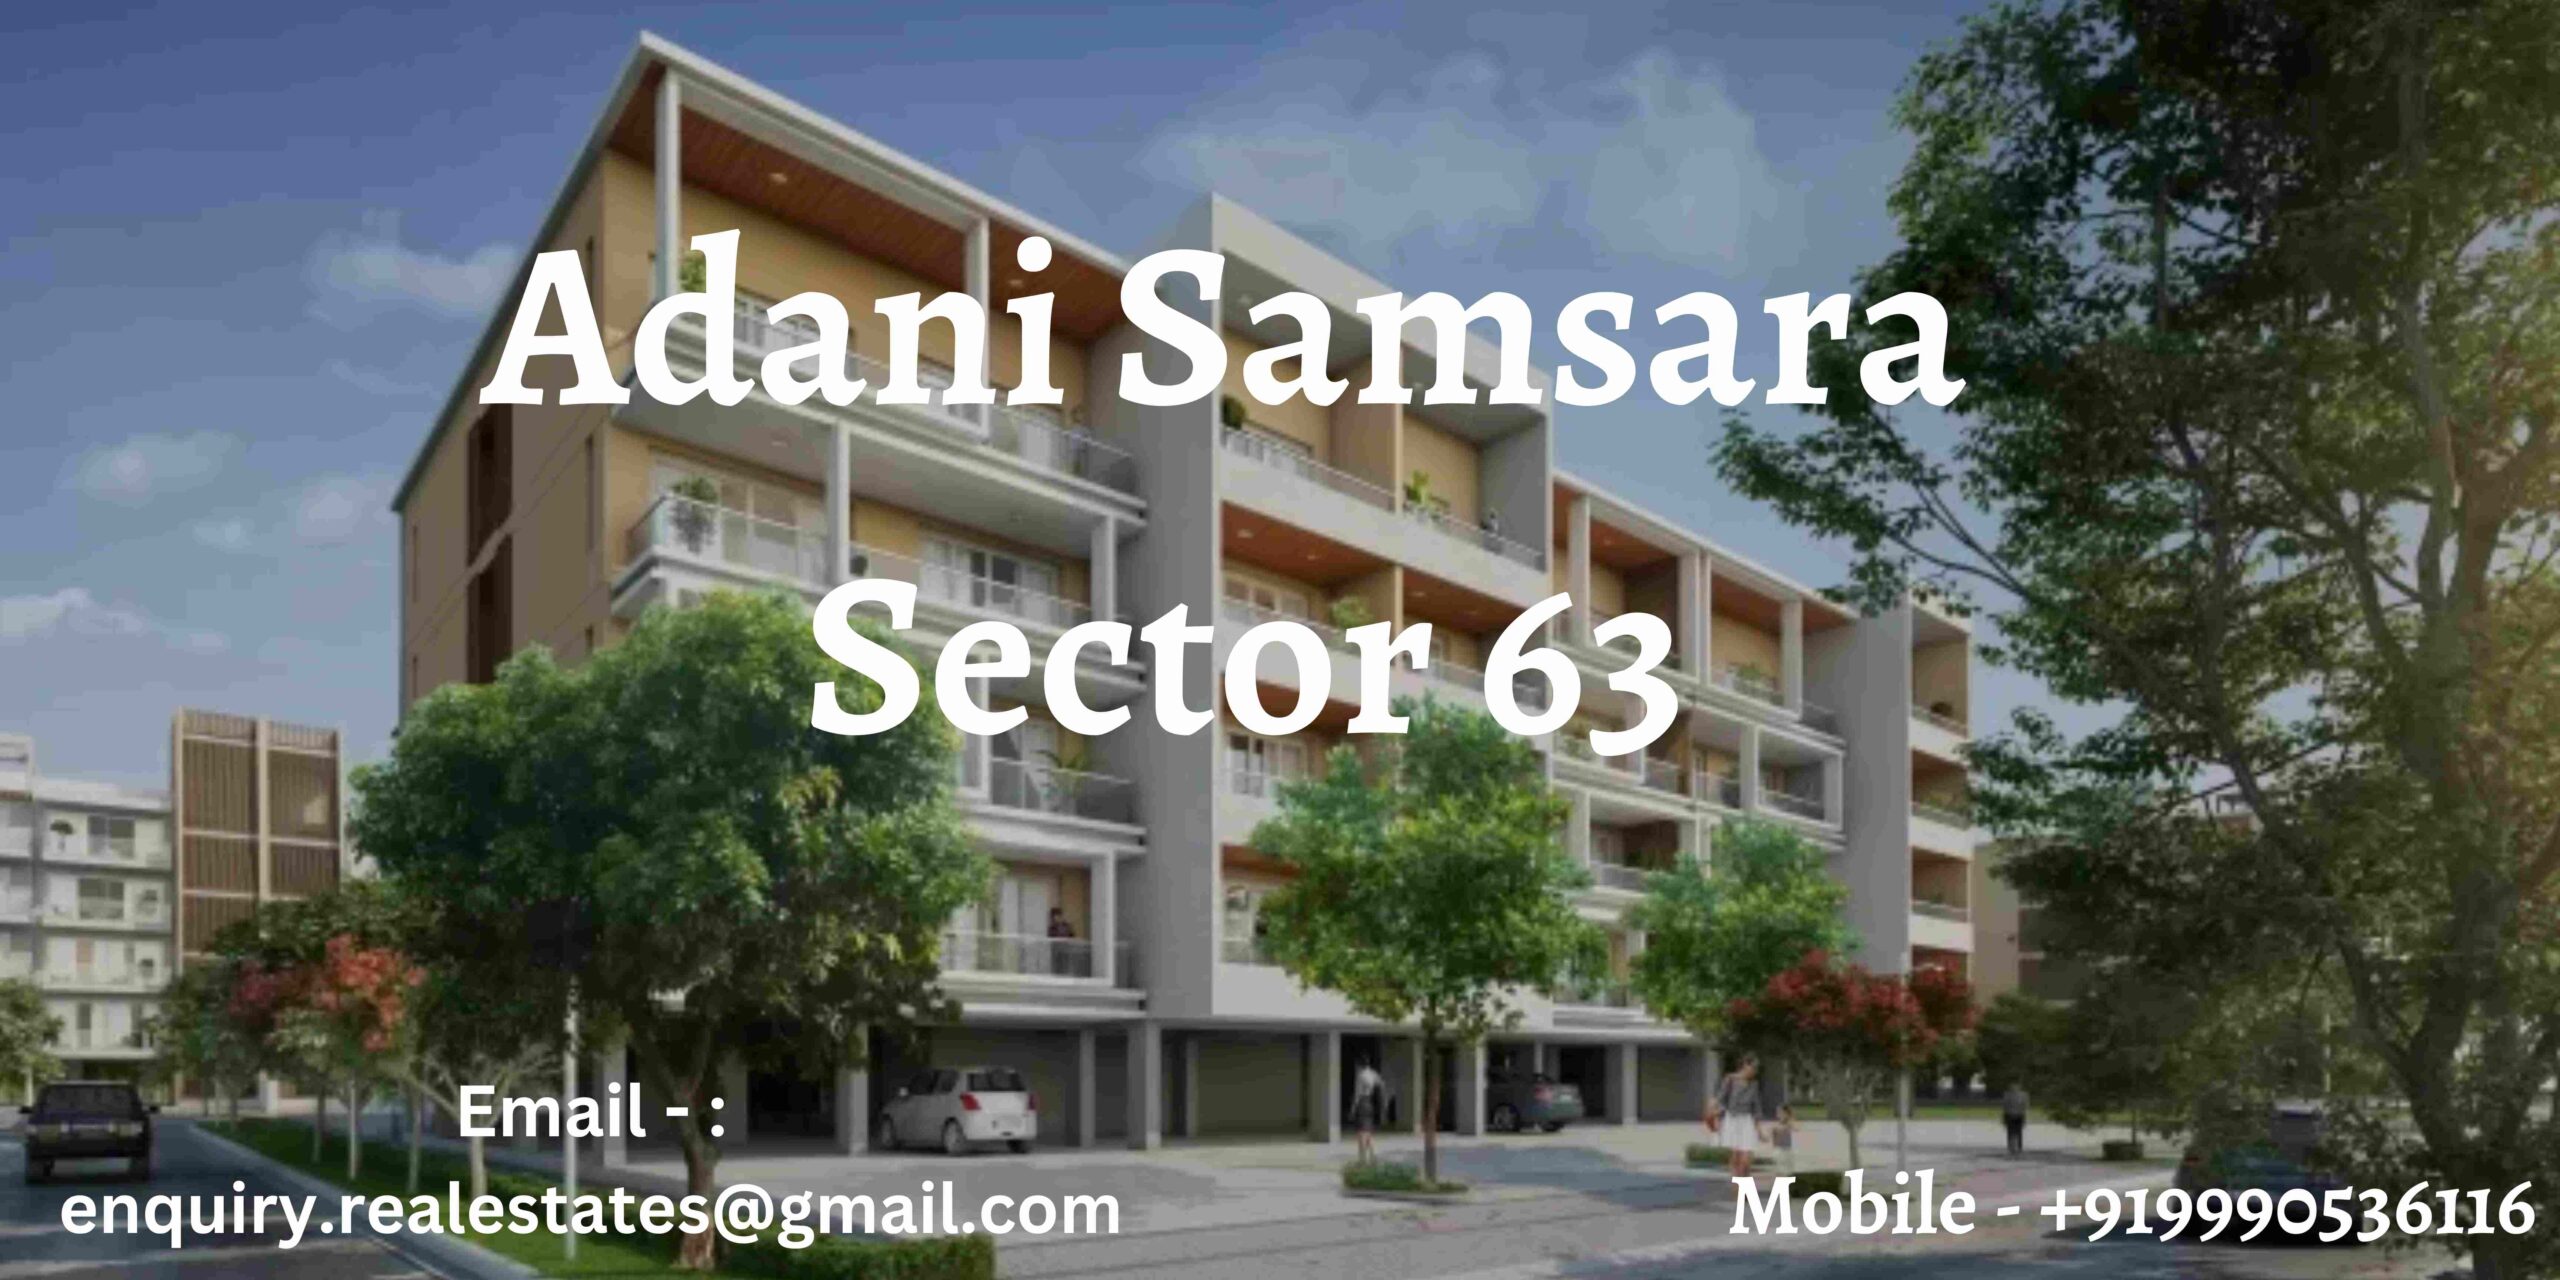 Adani Samsara Sector 63